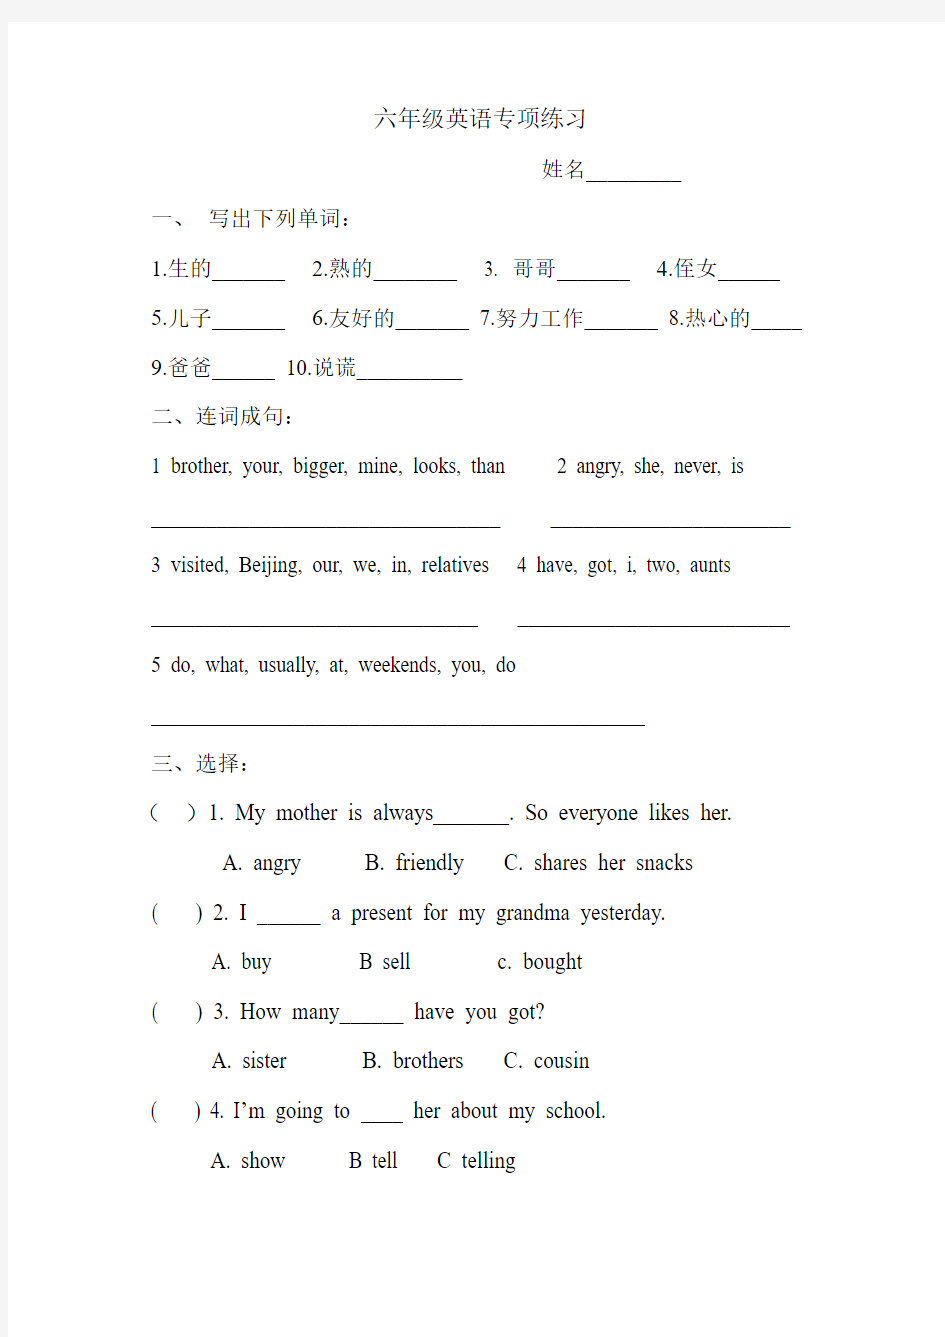 上海版《牛津英语》6B六年级英语练习测试题